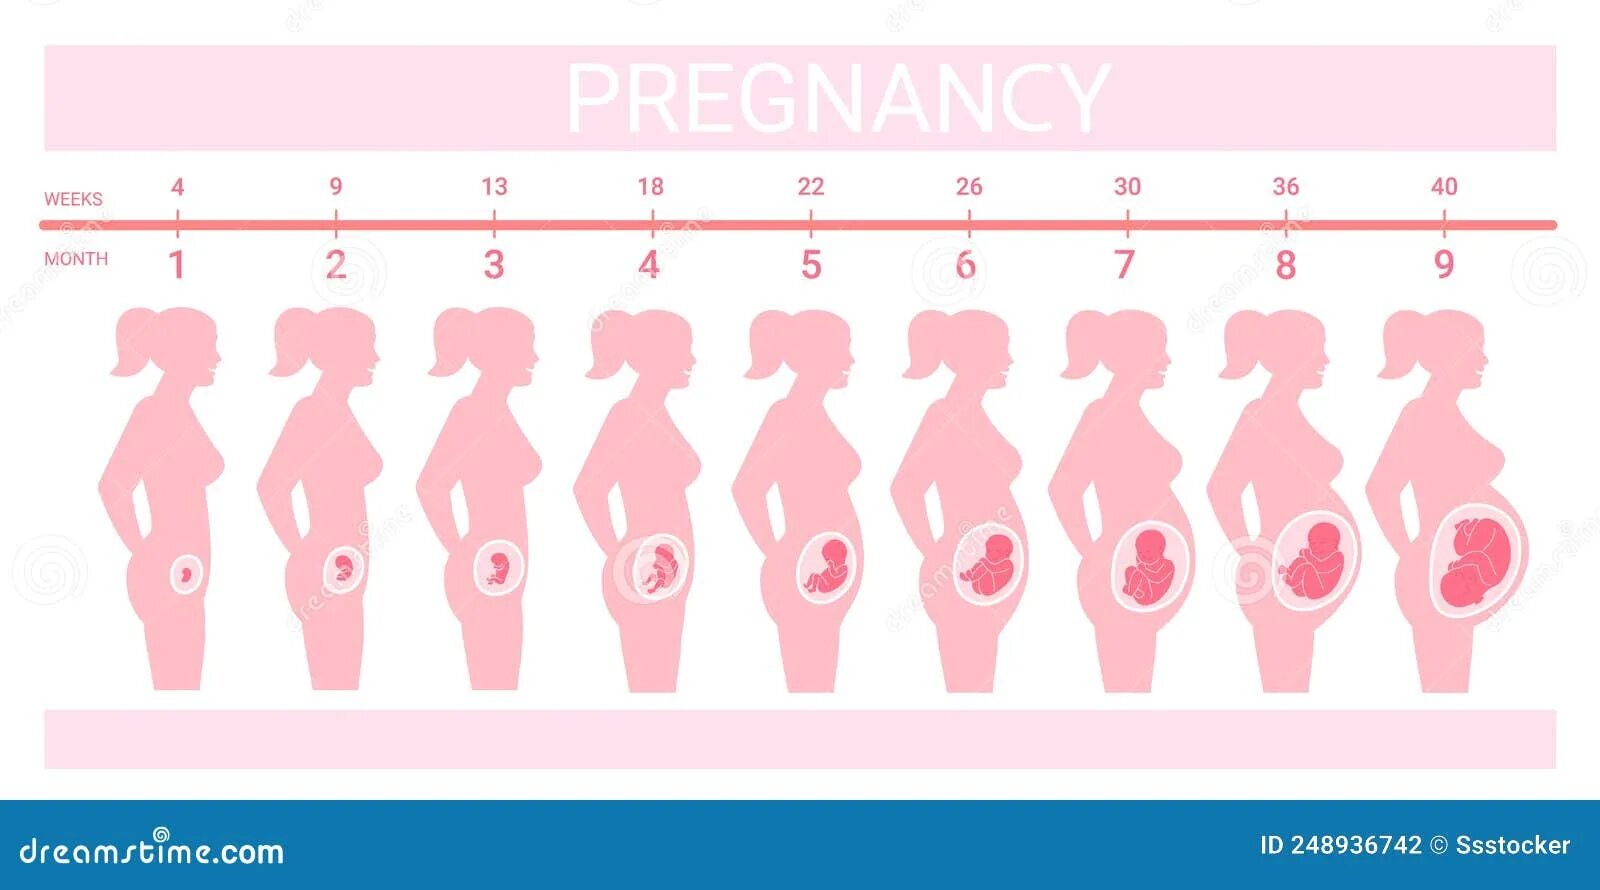 Беременность и роды в 2020. Триместры по месяцам и неделям. Триместры и месяцы беременности. Триместры беременности по месяцам. Триместры беременности по неделям и месяцам таблица.